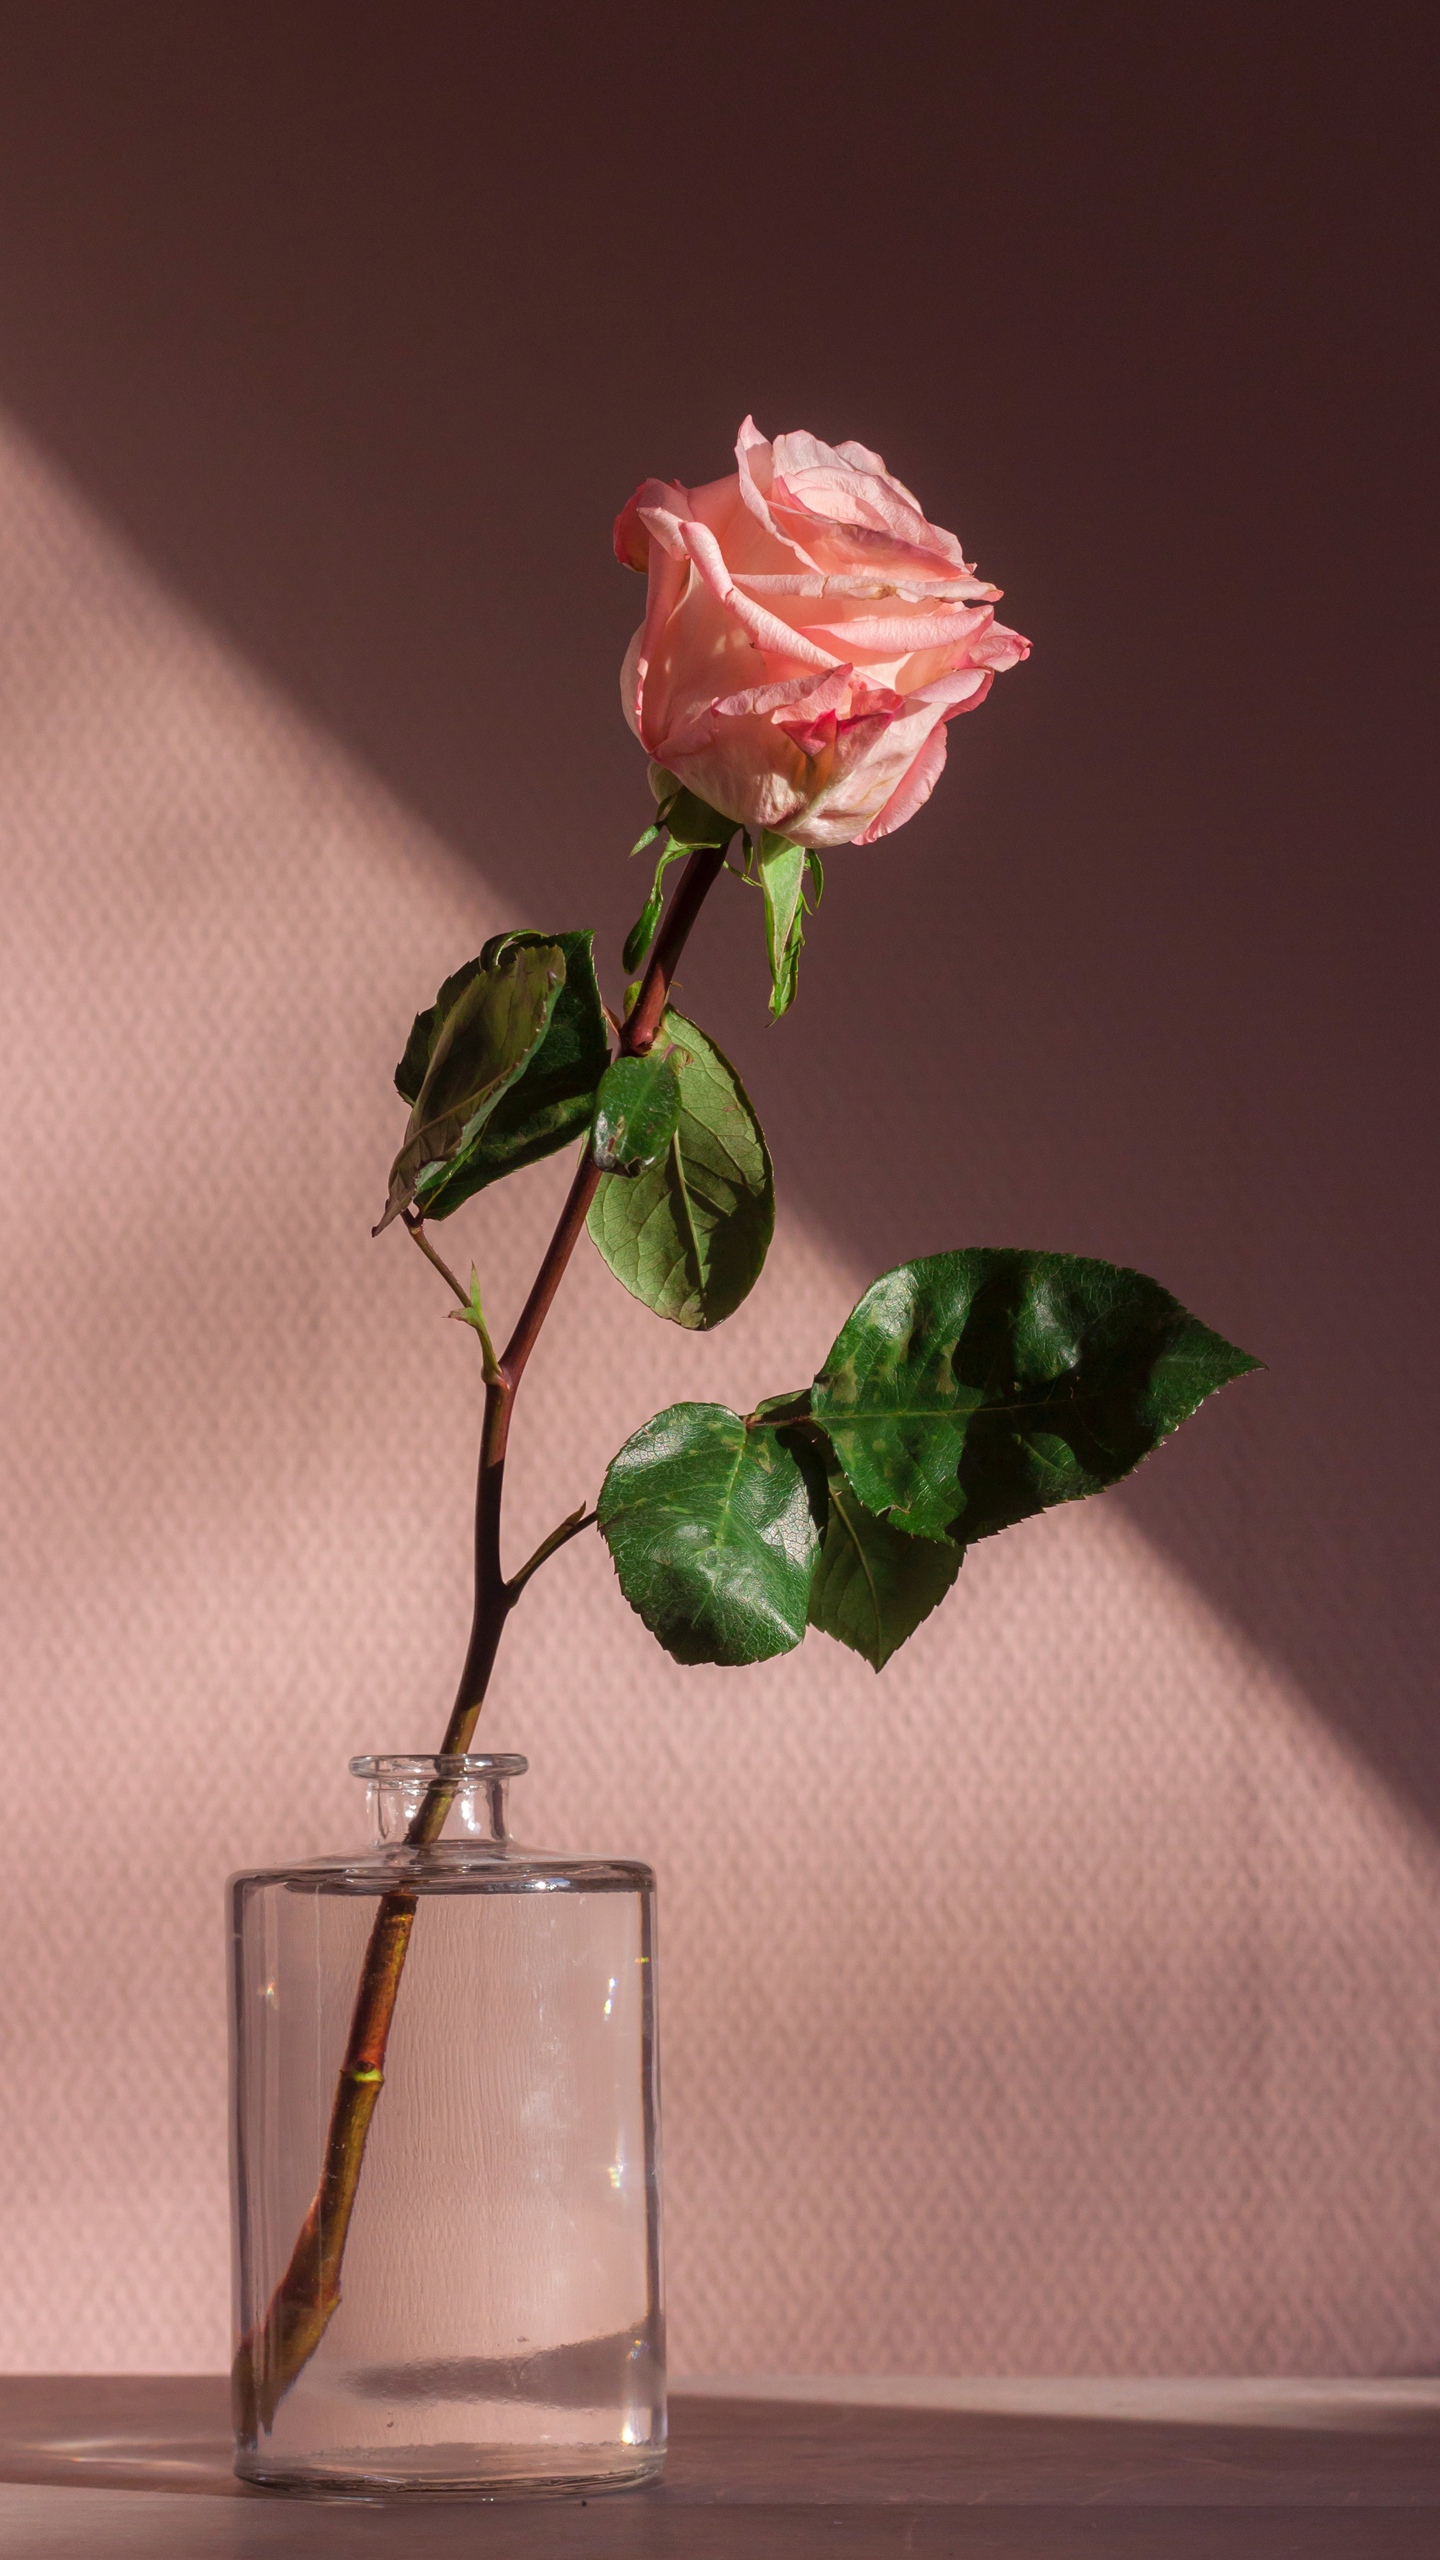 送你一只玫瑰花感觉真的是美丽极了